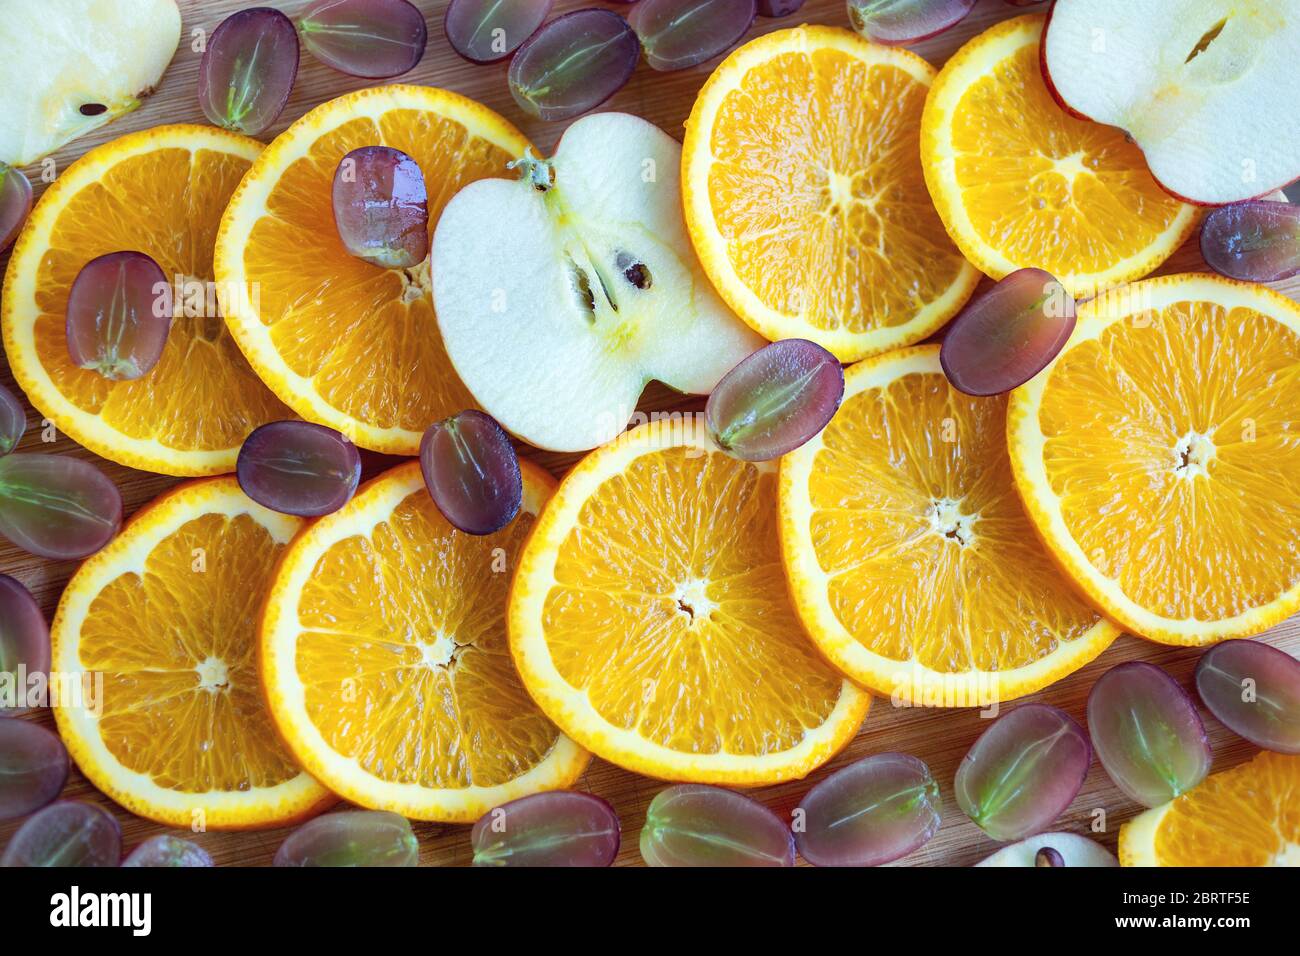 Primo piano della composizione delle fette di arancia, mela e uva. Concetto di snack vegetariano con frutta sana Foto Stock